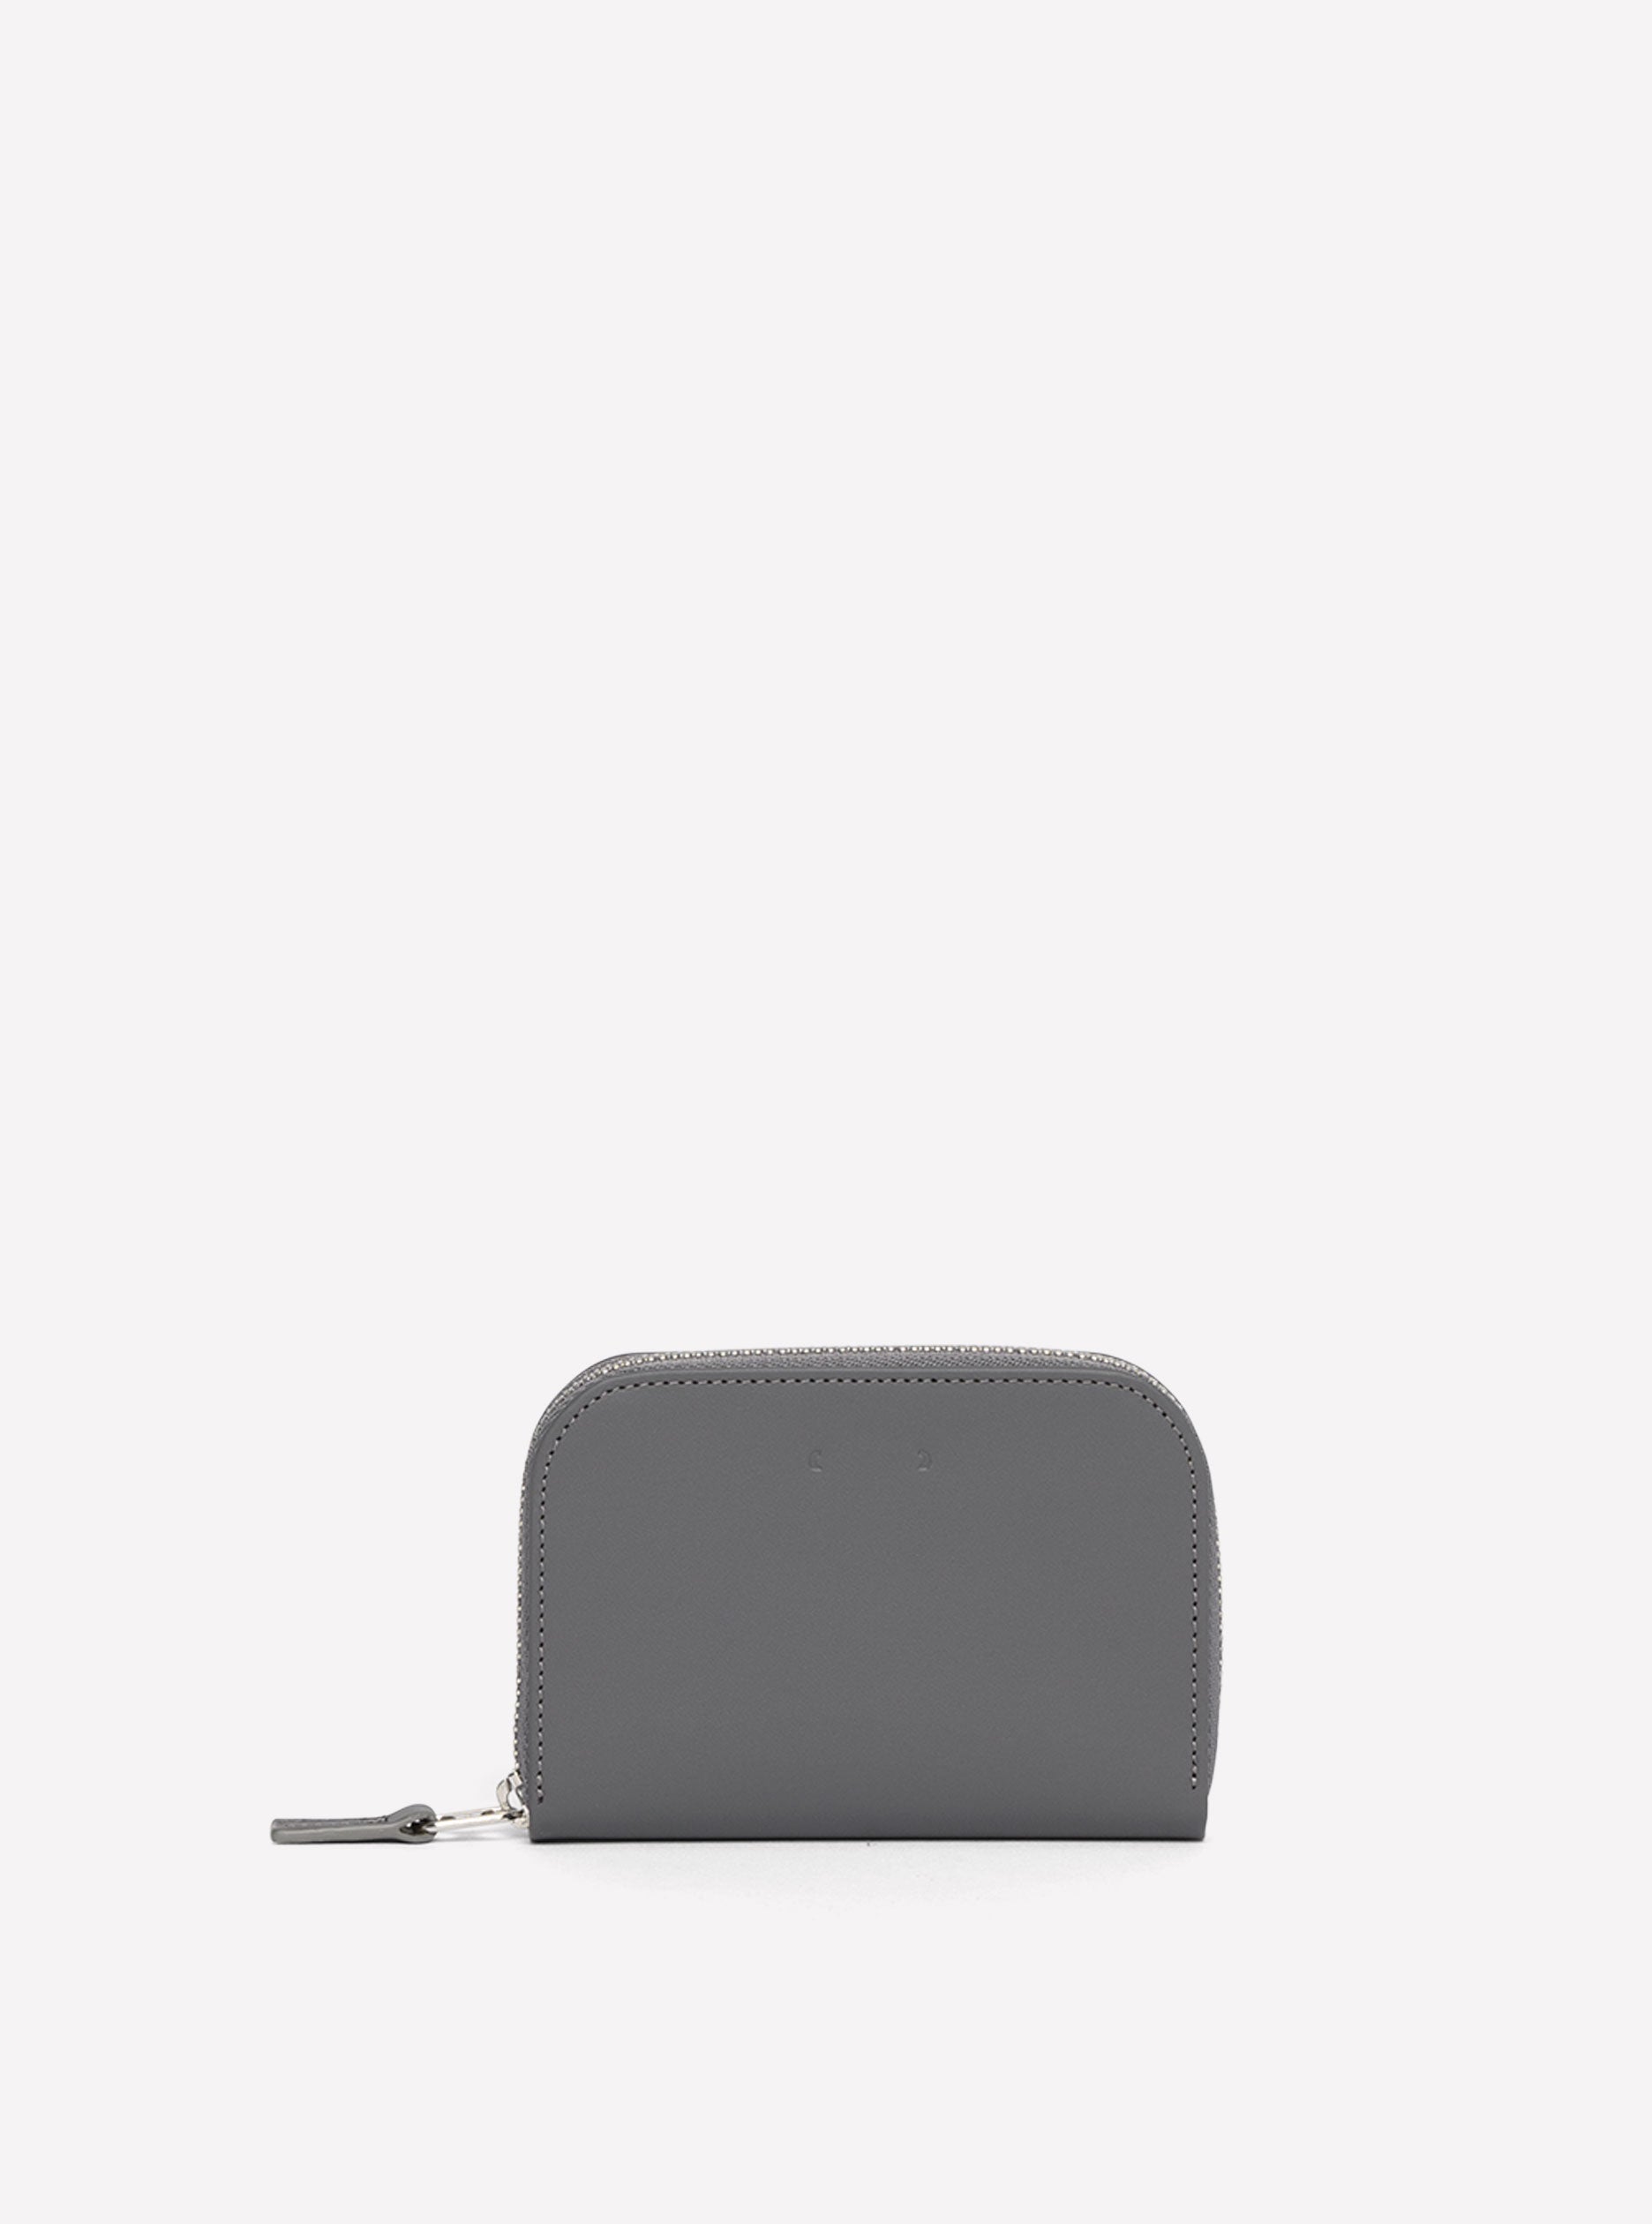 Slim card case - CM 1.1 grey by PB0110 – PB 0110